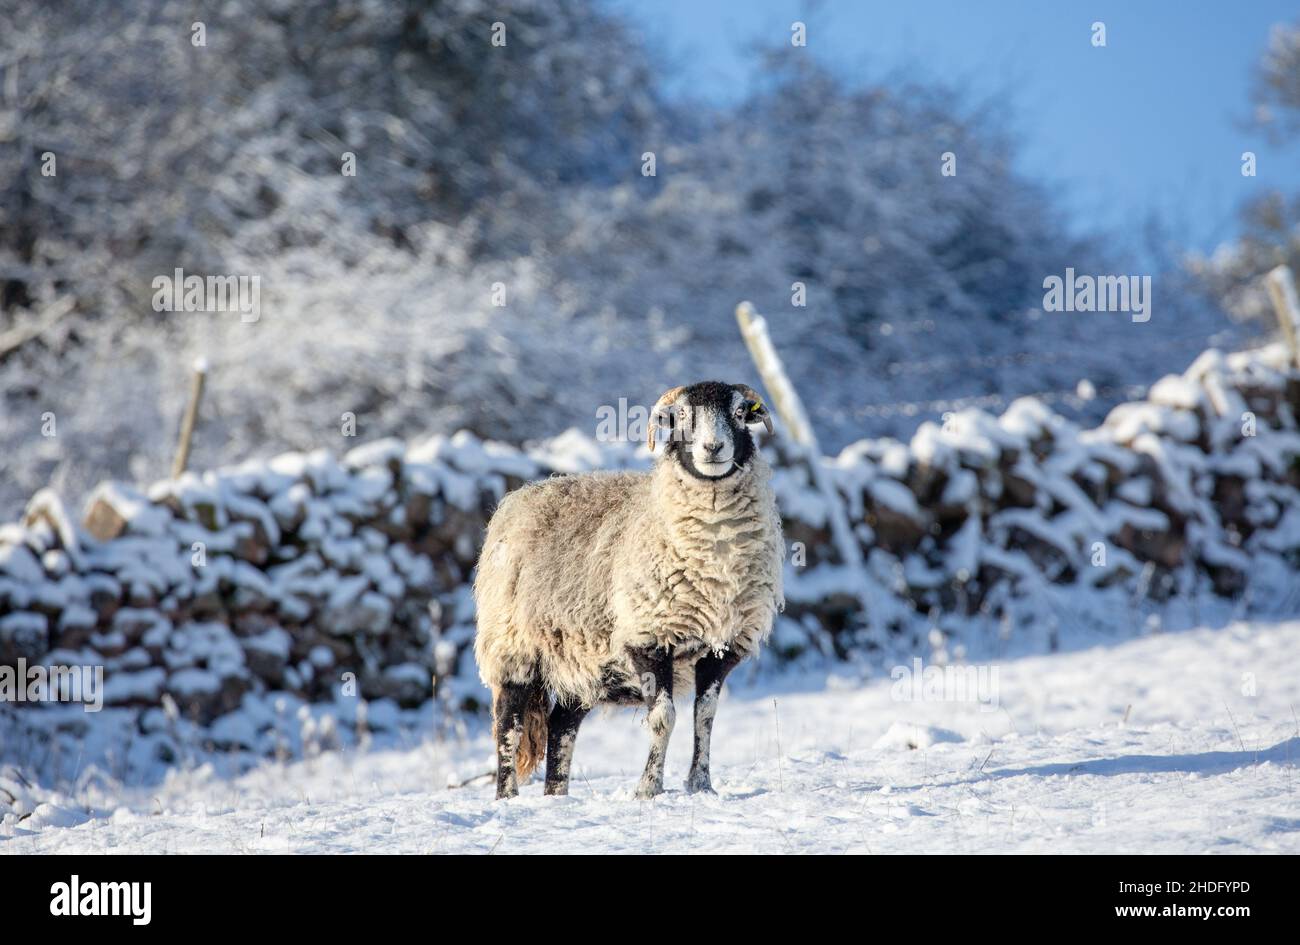 Ein feines Swaledale Mutterschafe im tiefsten Winter mit schneebedeckten Bäumen, Mauerbau und Feld. Swaledale Schafe sind eine robuste Rasse aus North Yorkshire. Stockfoto